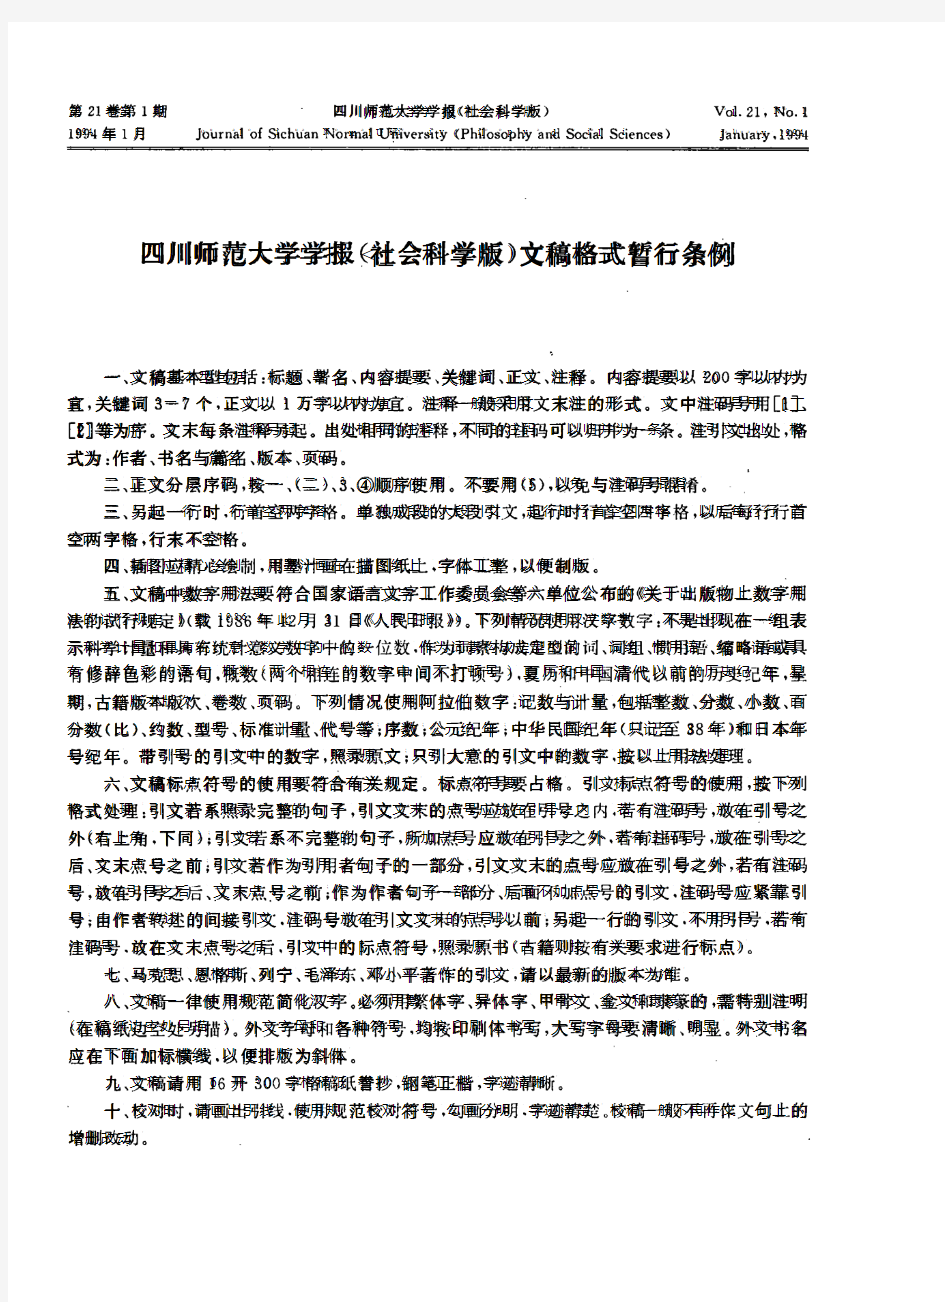 四川师范大学学报(社会科学版)文稿格式暂行条例-论文